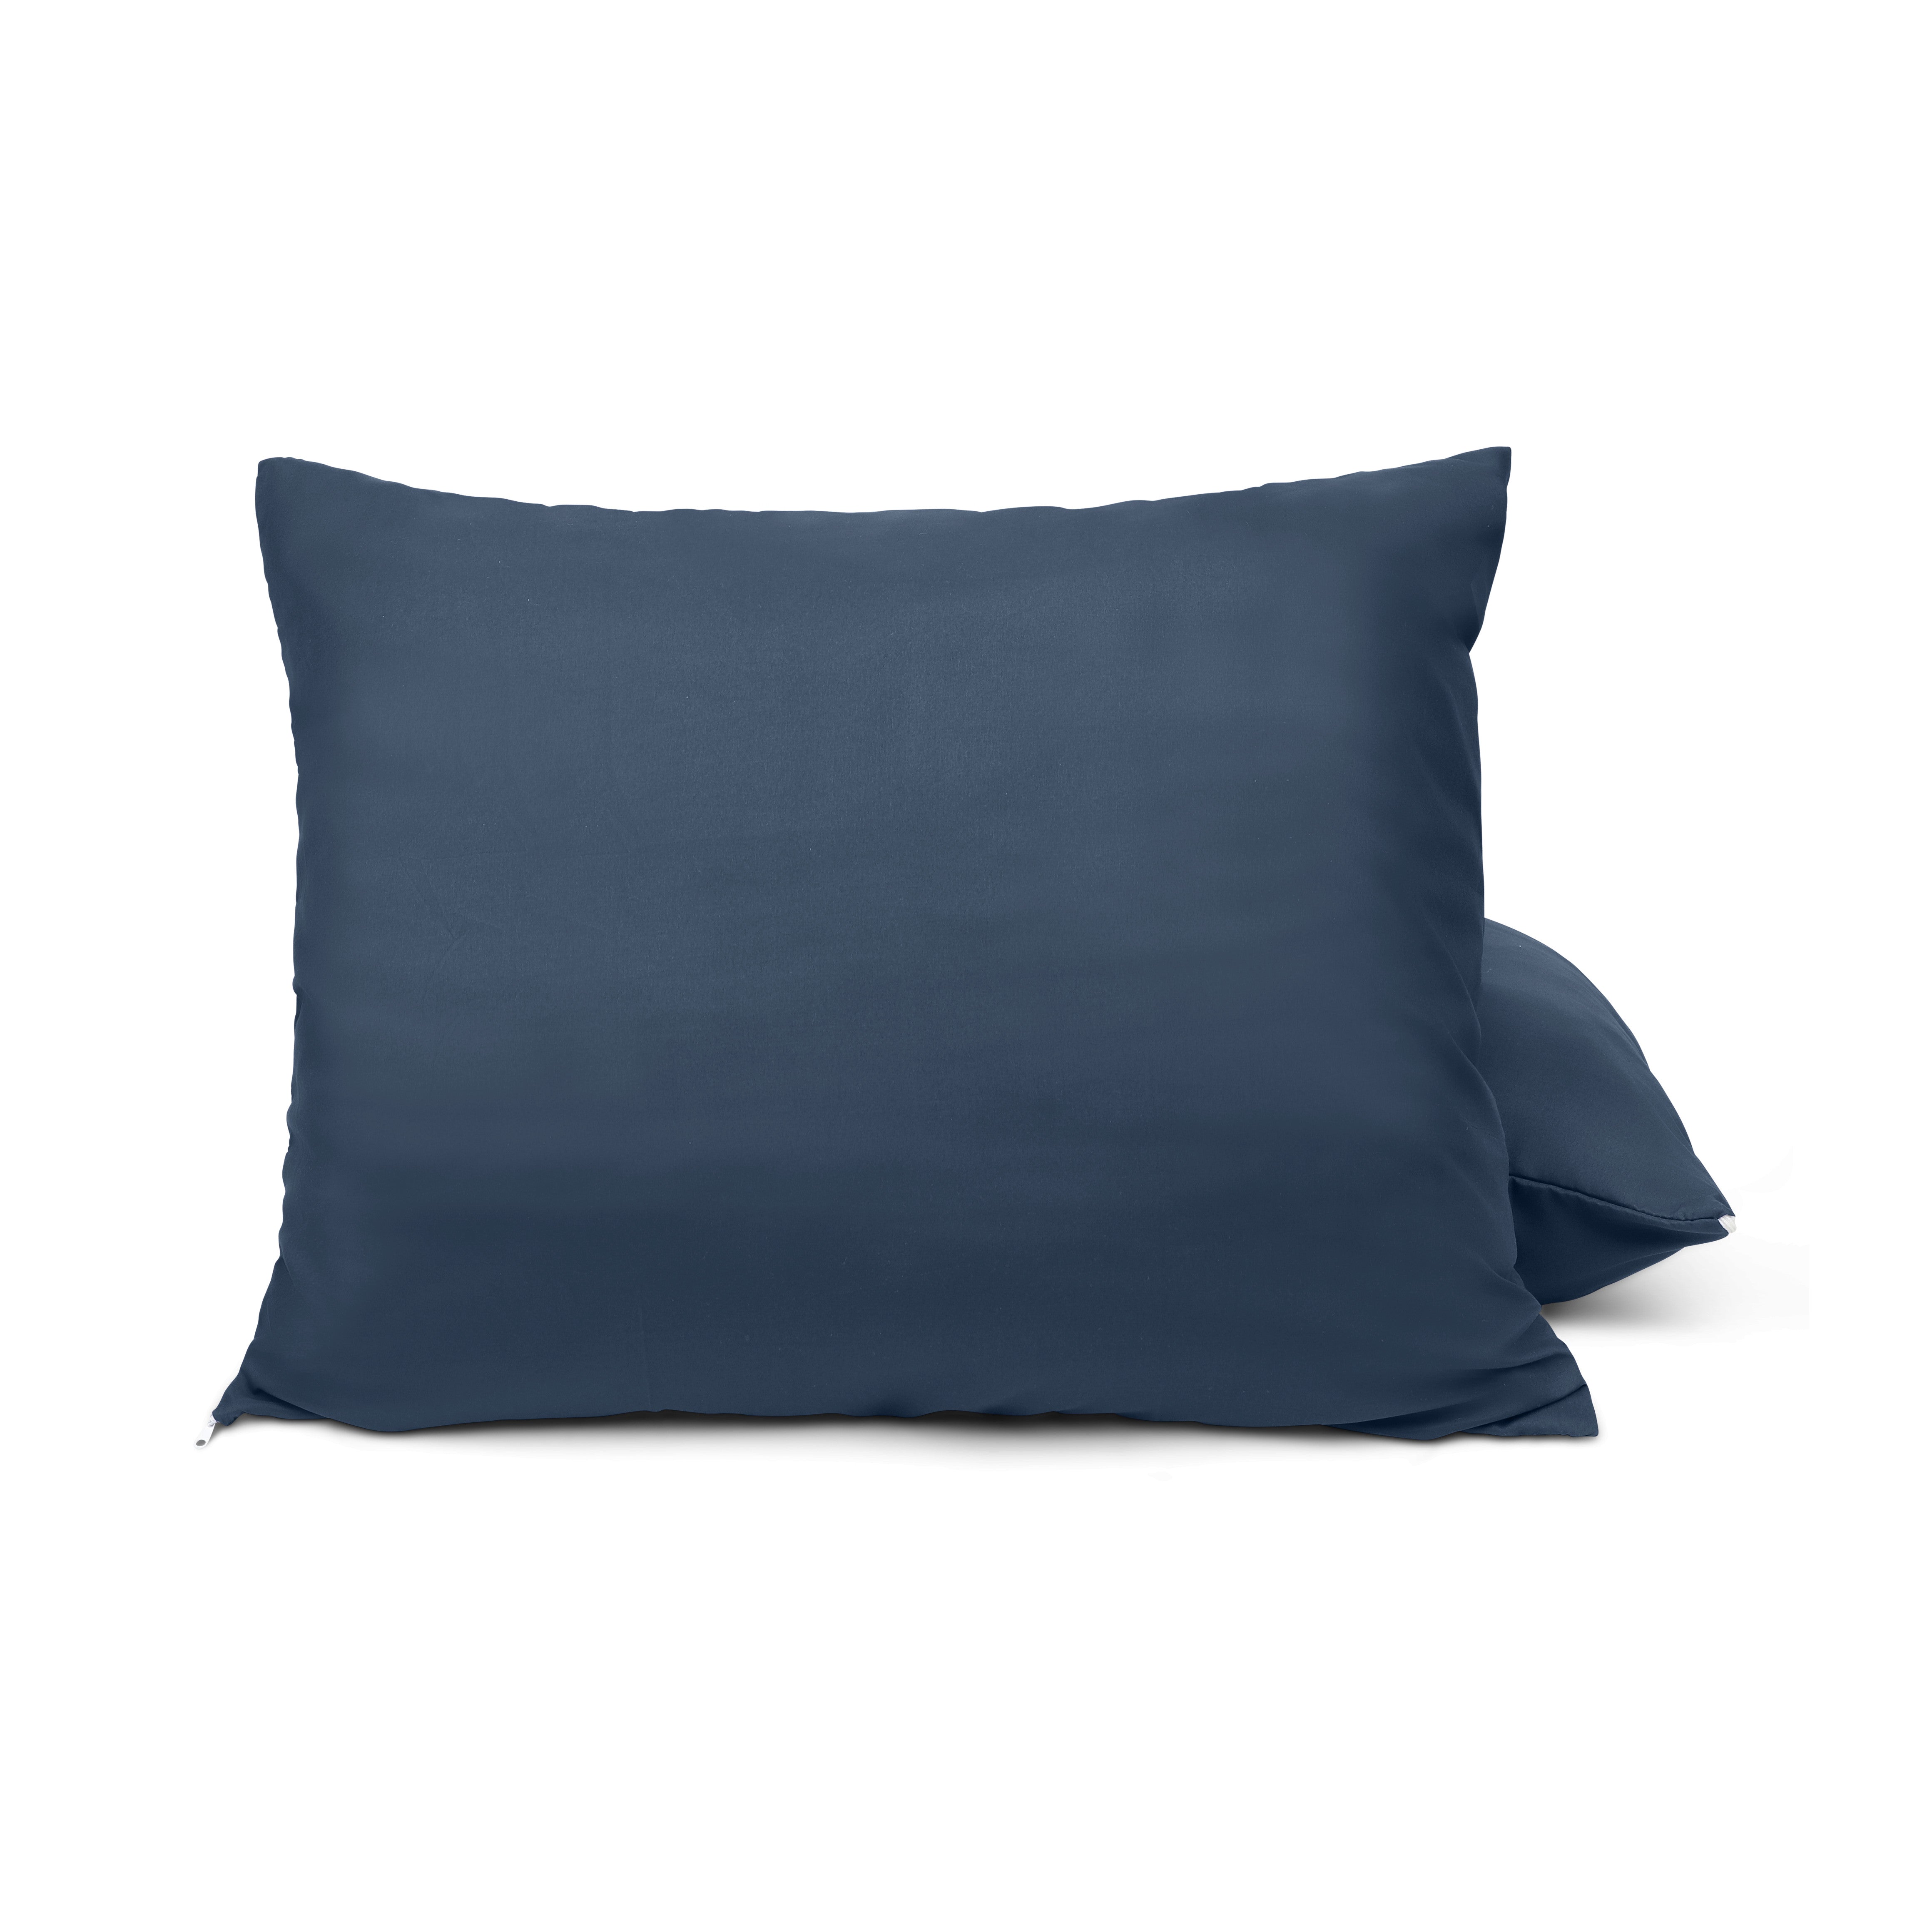 HappyDuvet | Dark blue pillowcase set 2 pieces - 60x70cm - 100% Microfibre